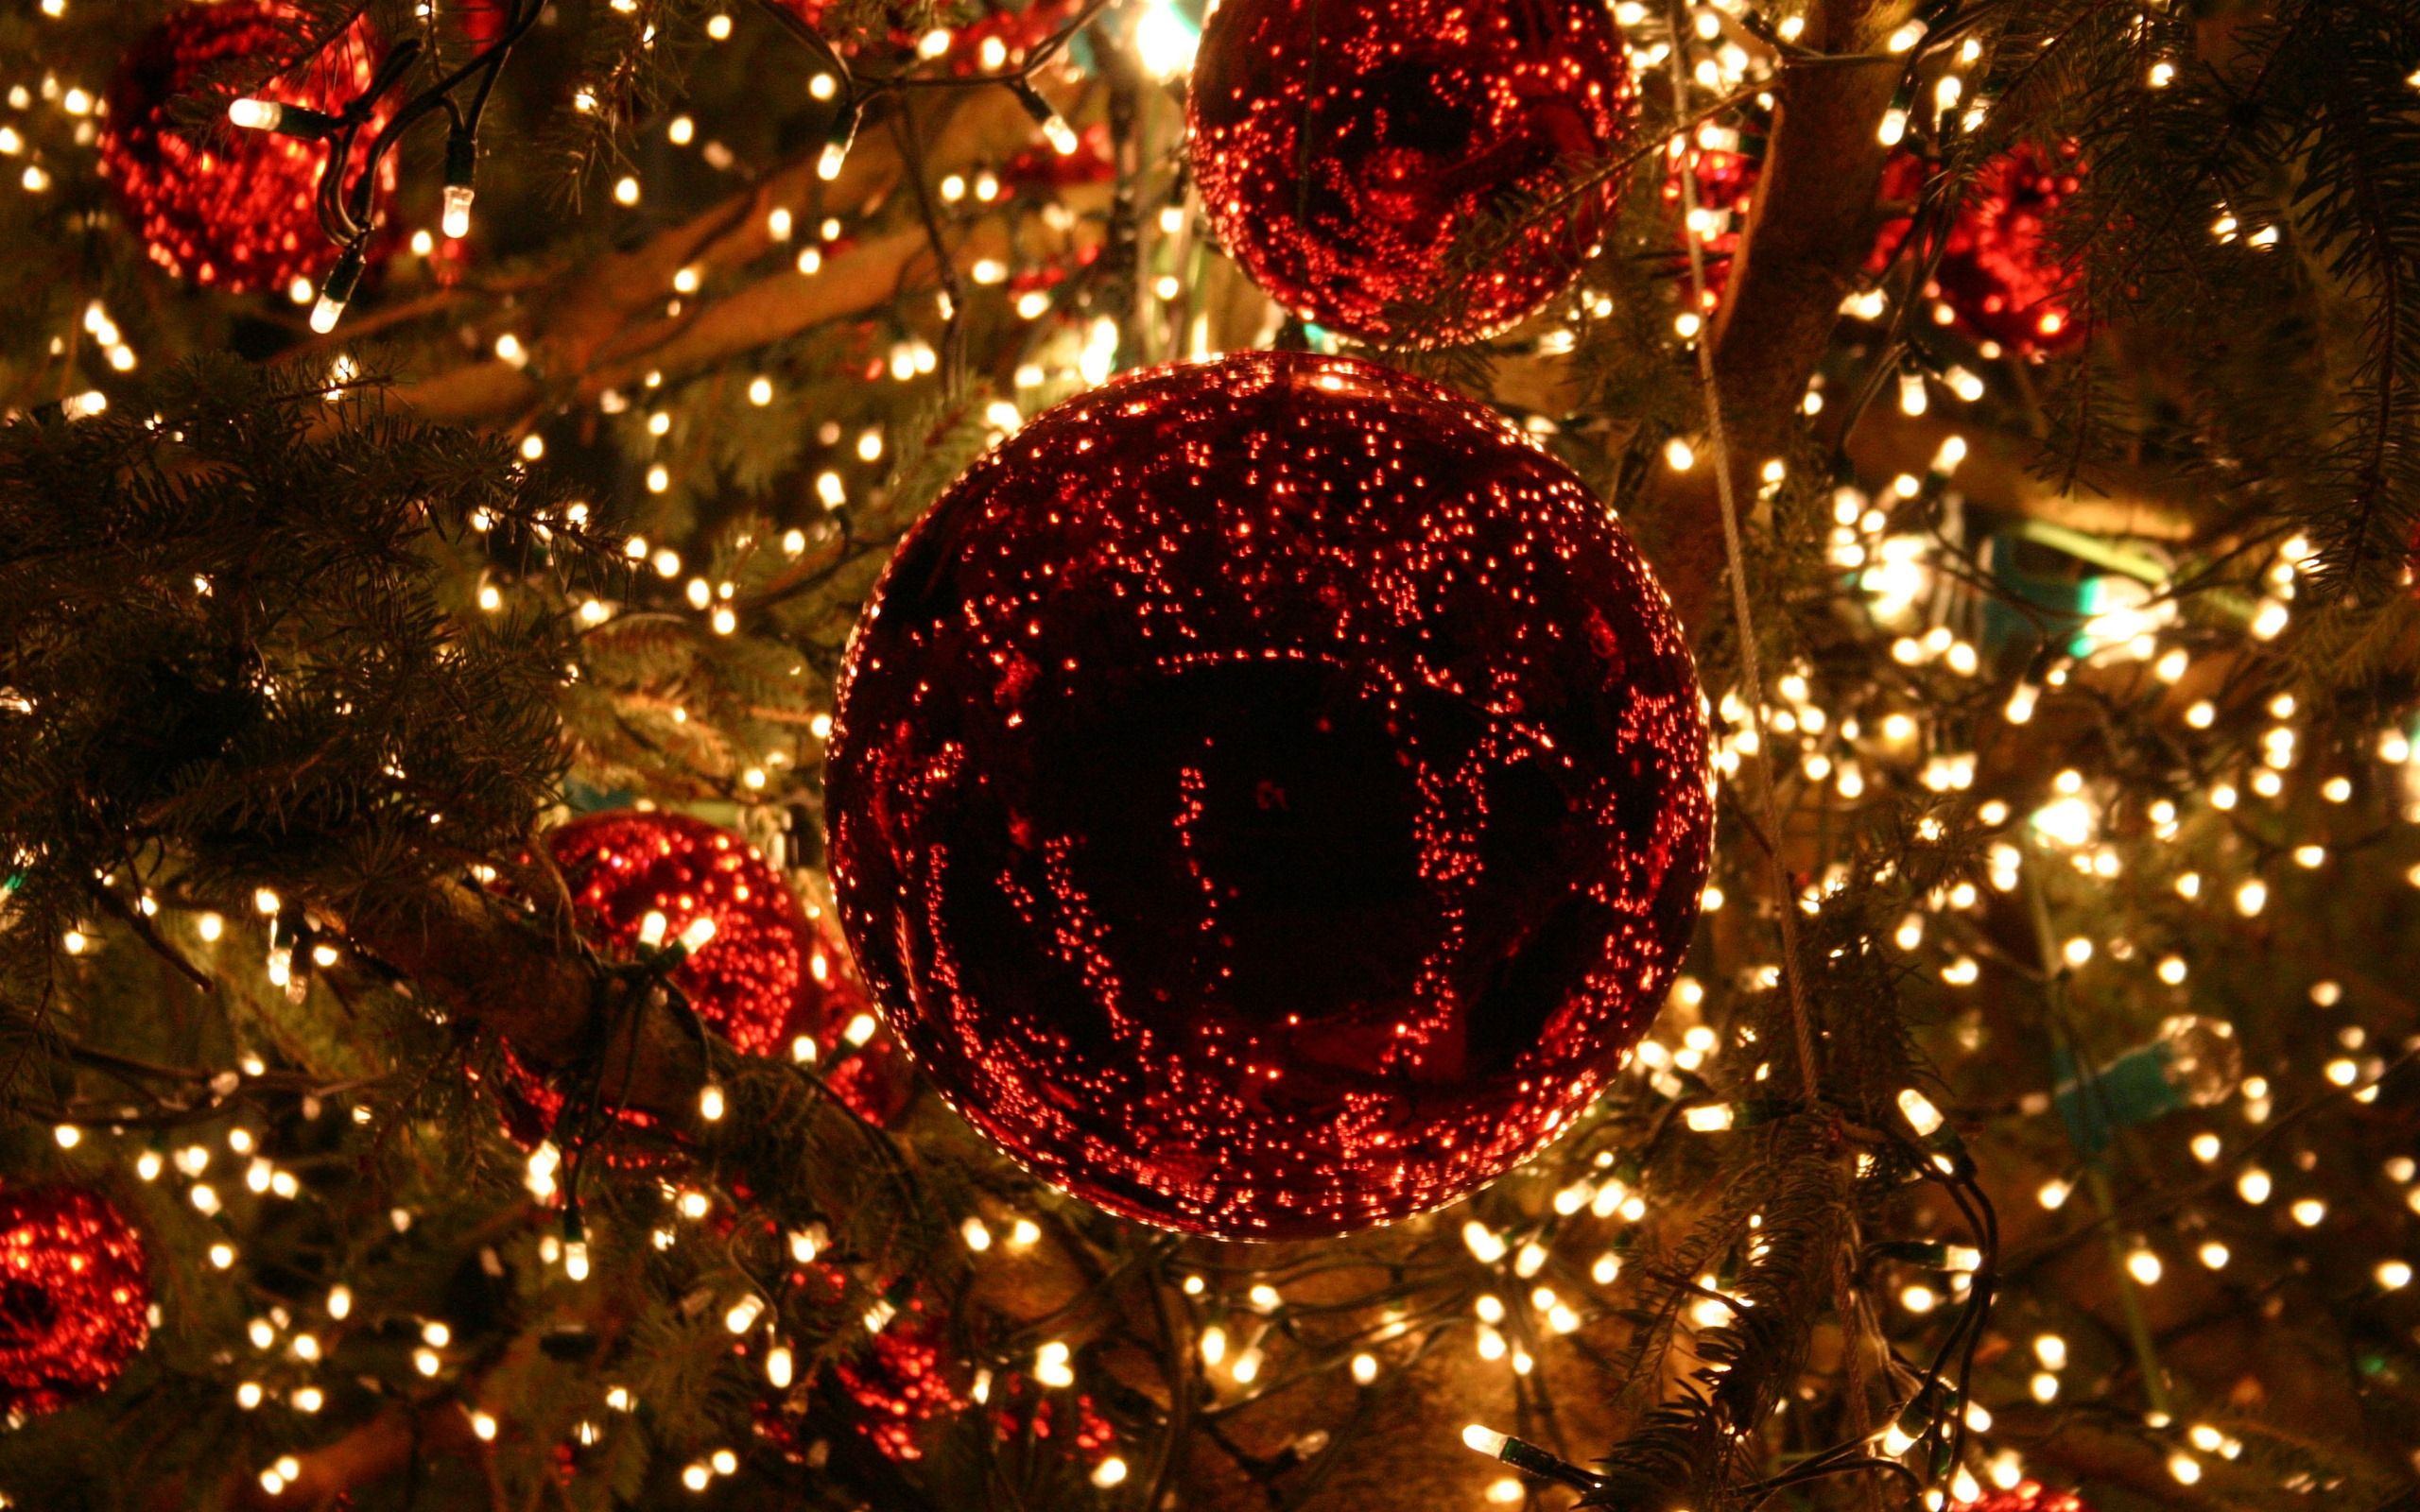 Christmas Lights Wallpaper. Christmas lights wallpaper, Christmas lights background, Outdoor christmas